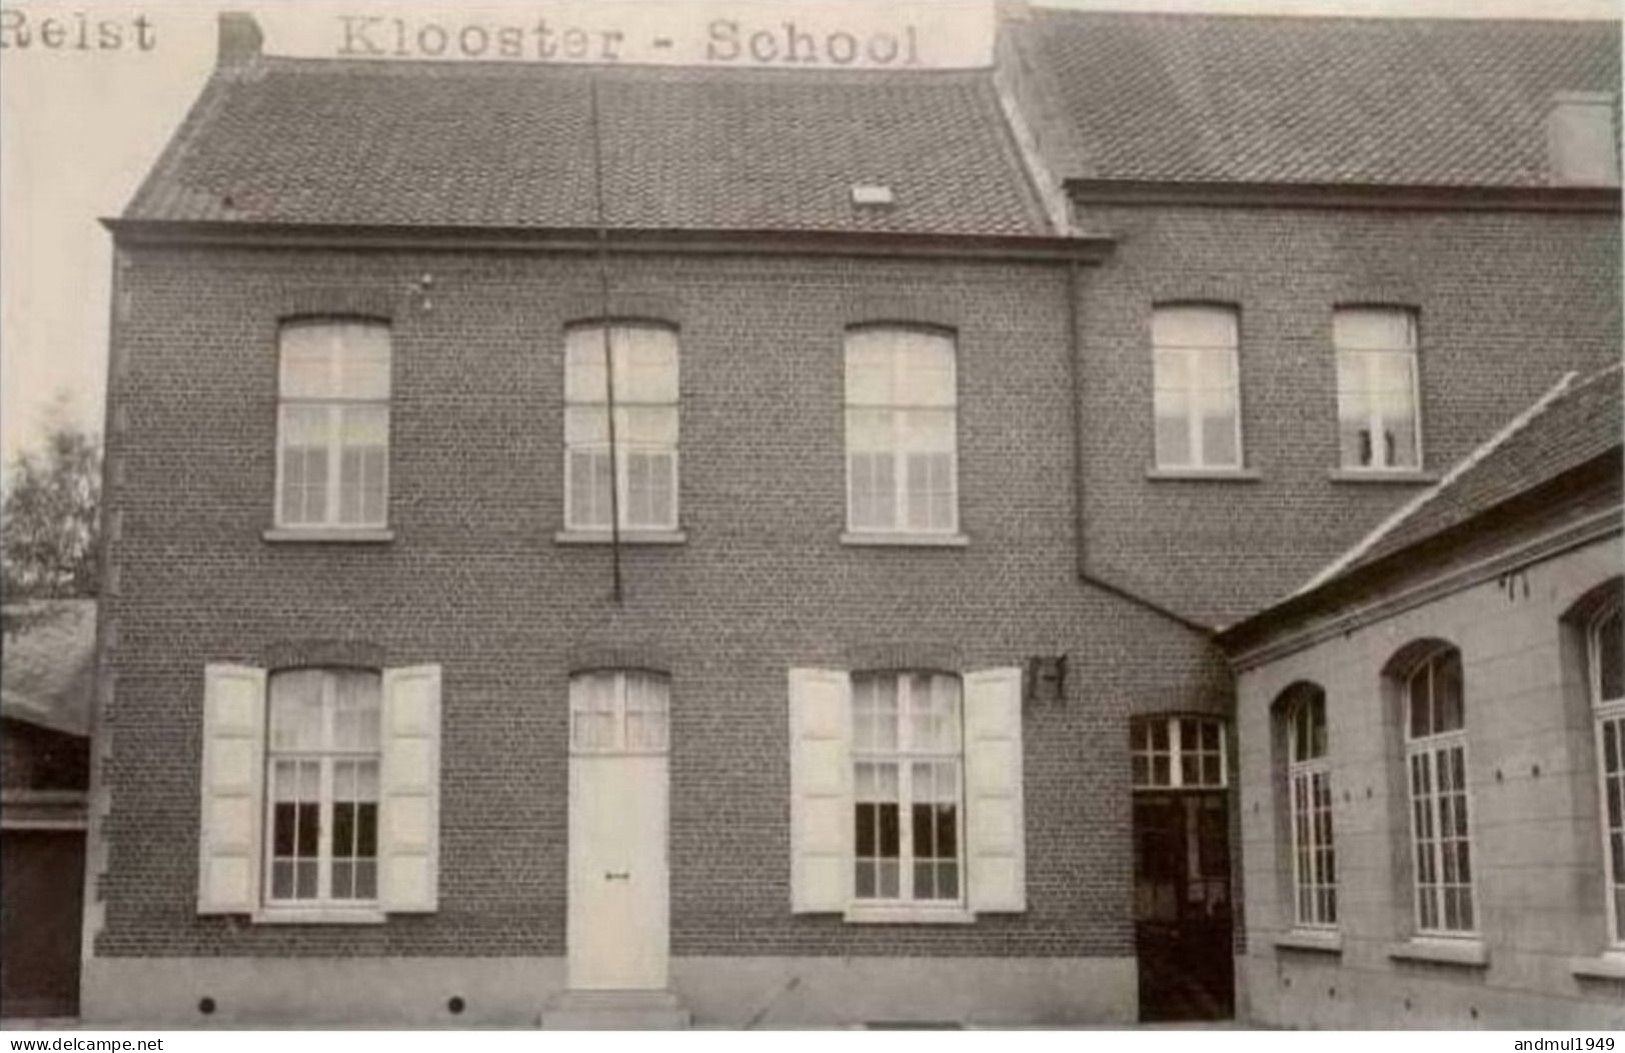 RELST (Kampenhout) - Klooster - School - Photo-carte - Kampenhout